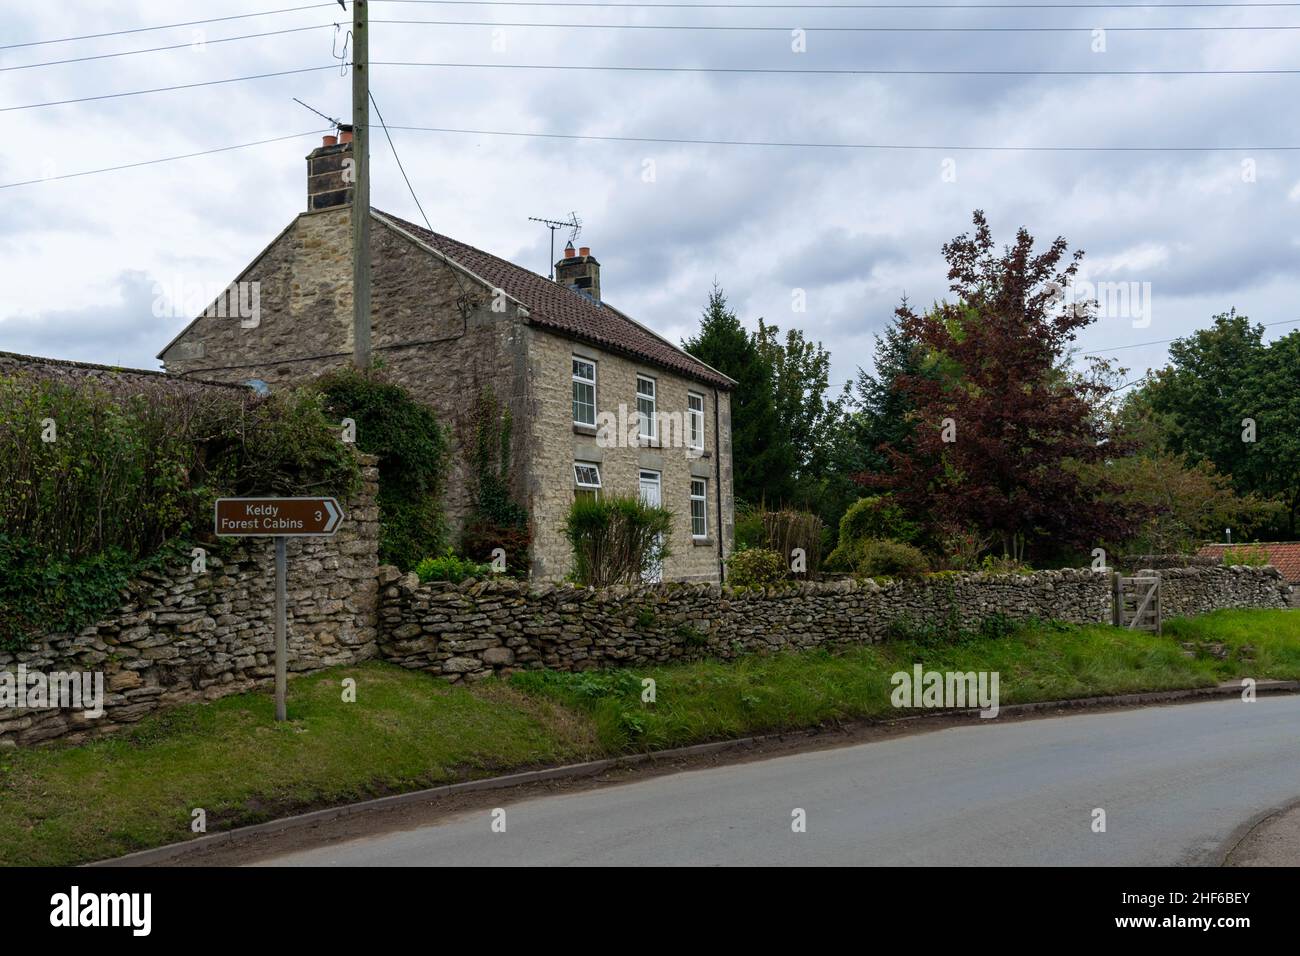 Cropton, Großbritannien - 5th. Oktober 2019: Malerische Postkarte des schönen ländlichen Dorfes Cropton, England. Häuschen und Steinhäuser, blühende Garde Stockfoto